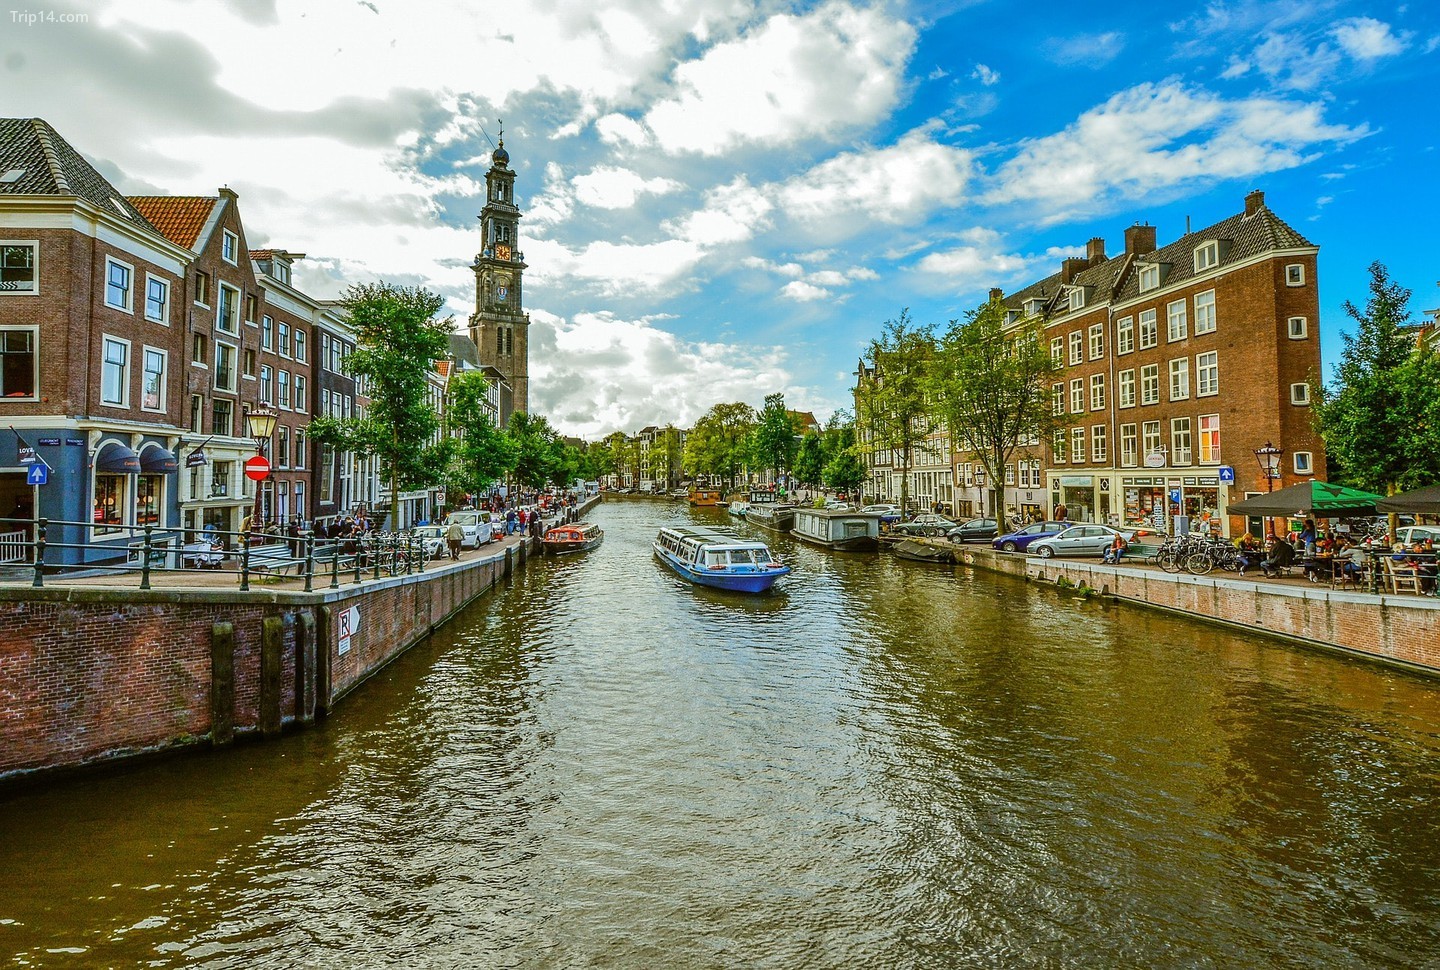 Lên thuyền du lịch và đi thuyền qua các tuyến đường thủy lịch sử của Amsterdam